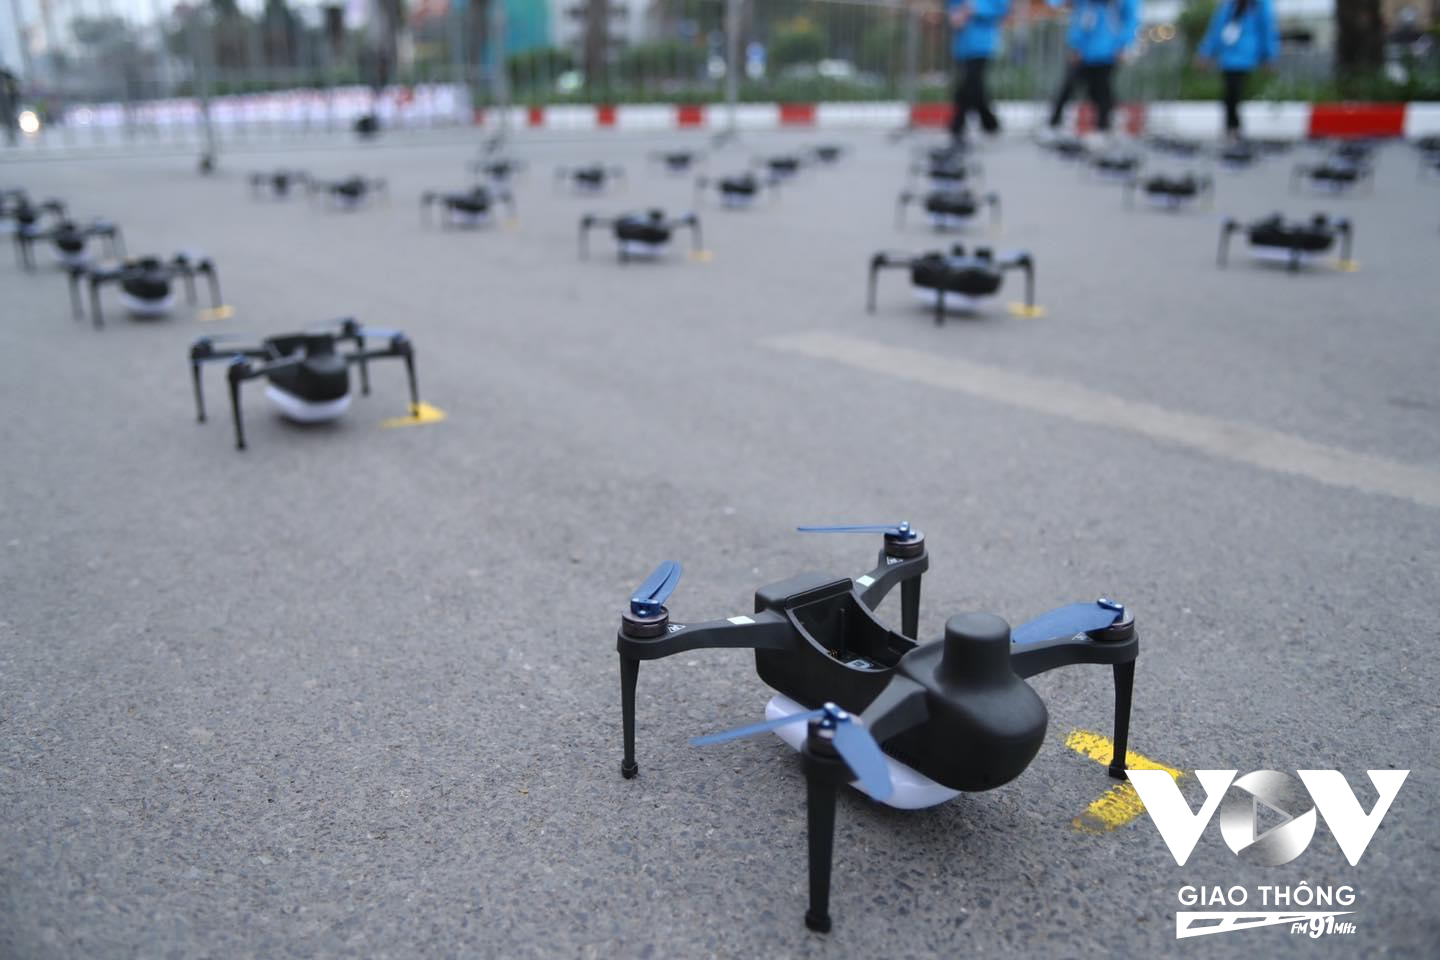 Ngay từ chiều ngày 7/2, hơn 2.000 chiếc drones đã được Ban tổ chức chuẩn bị sẵn sàng cho màn trình diễn ánh sáng Rực rỡ Thăng Long.